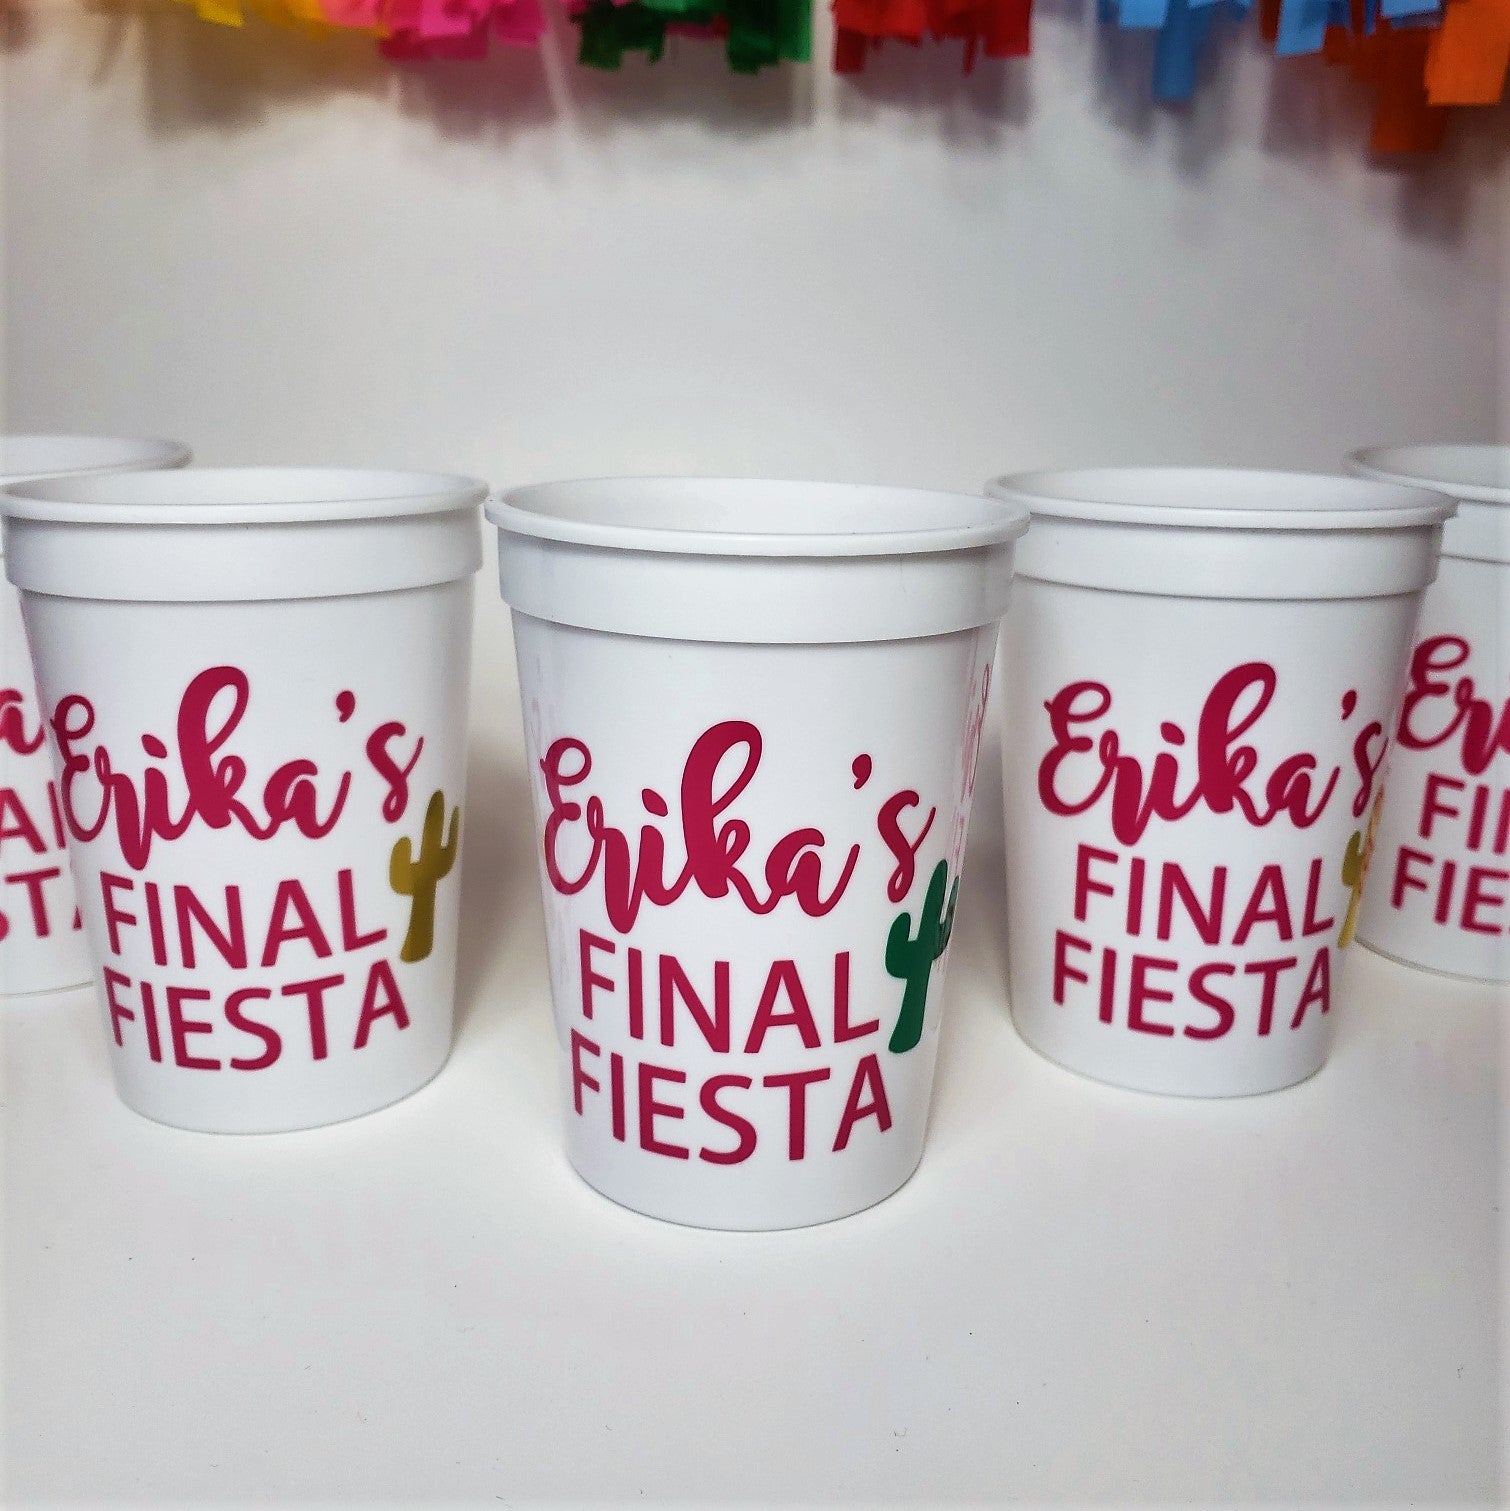 Final Fiesta Bachelorette Party Custom Cups Set – Earle's Folly